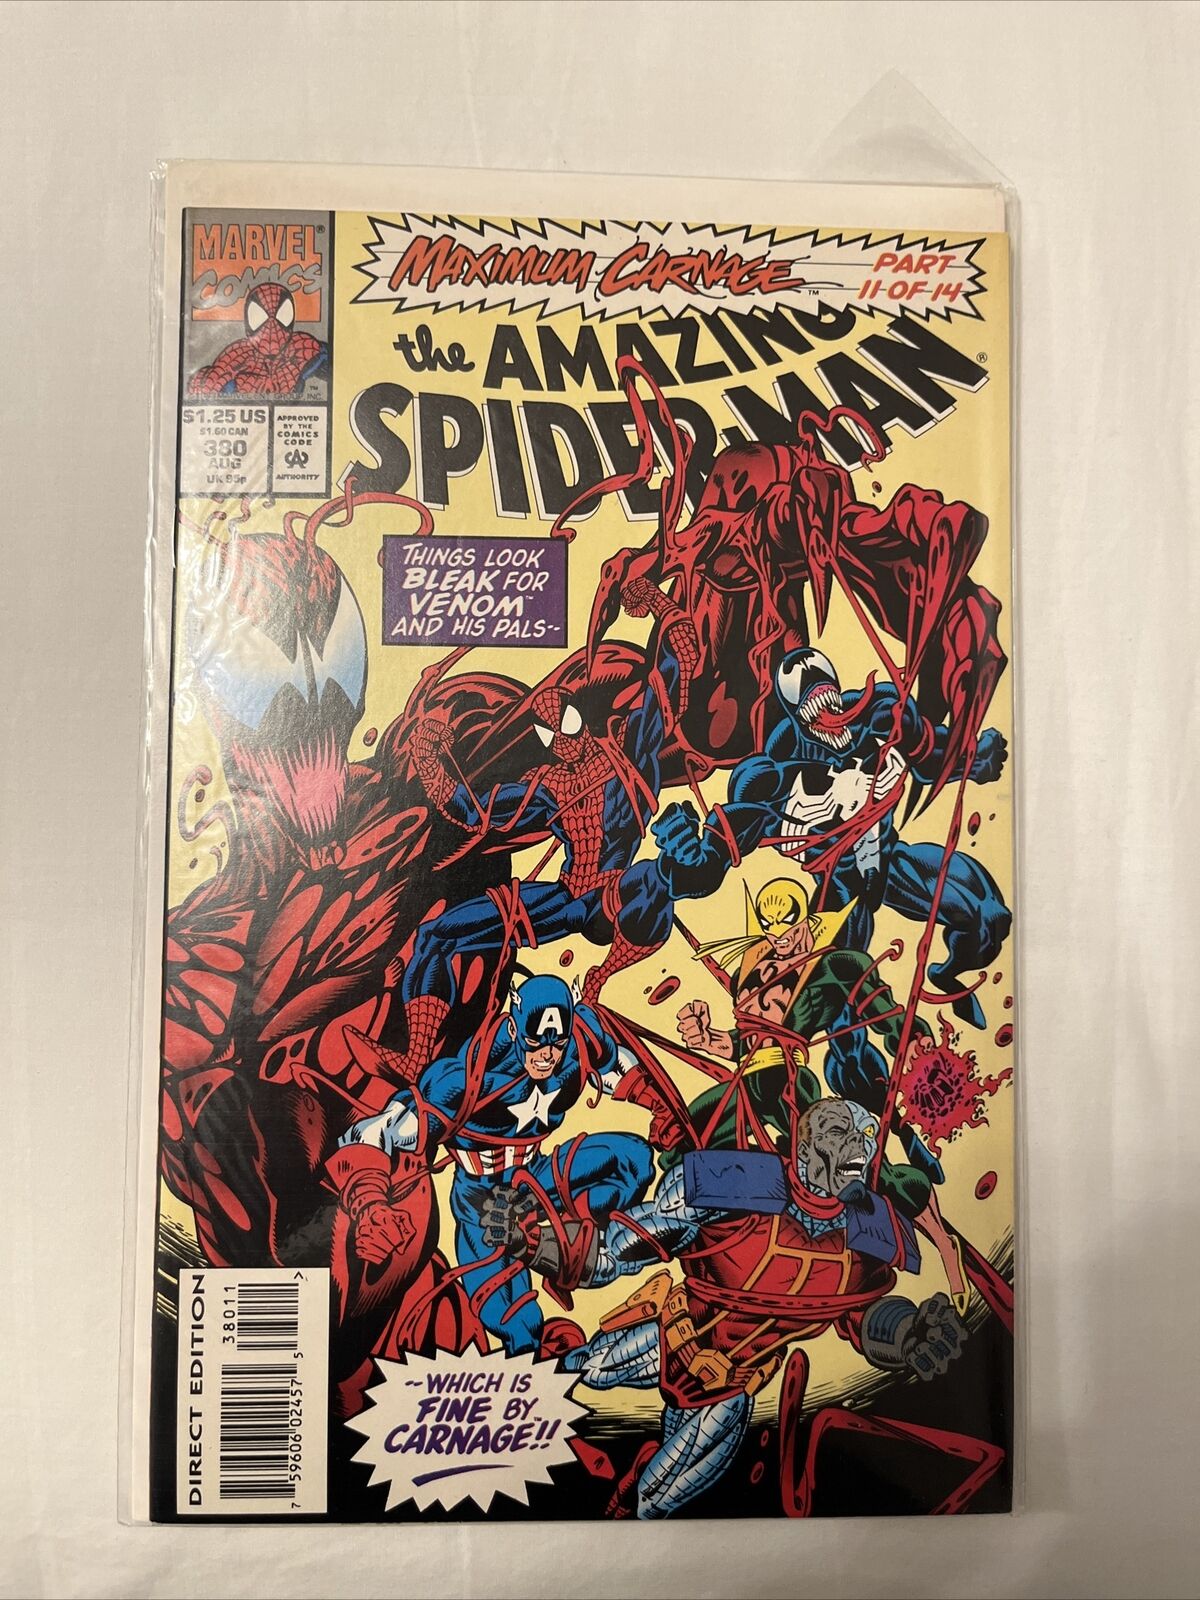 The amazing Spider-Man, maximum Carnage part 11